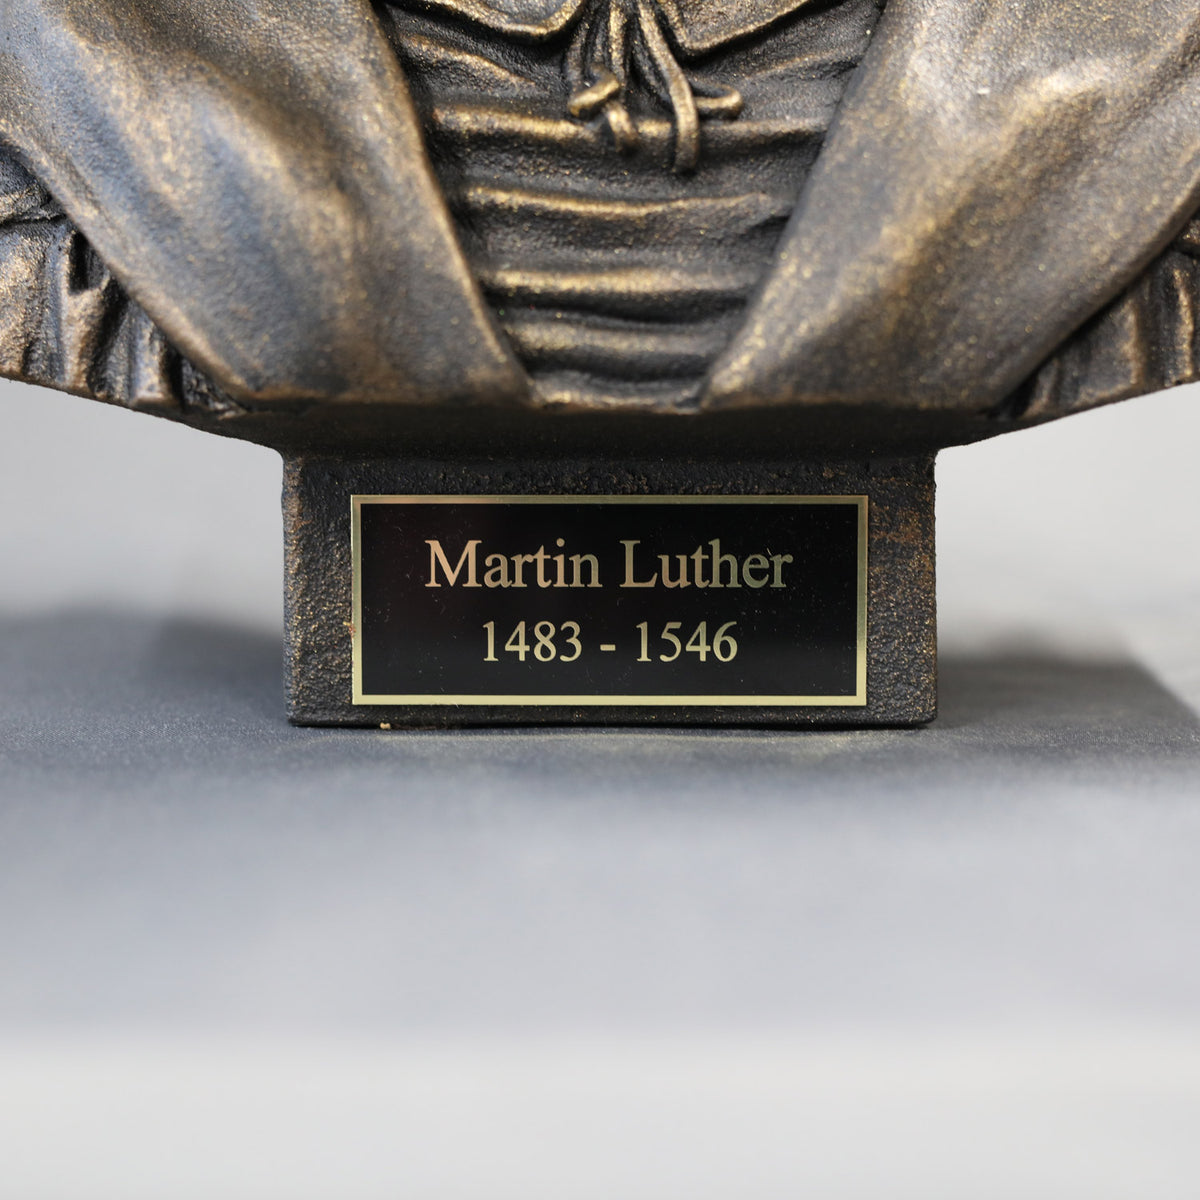 Martin Luther - Sculpture